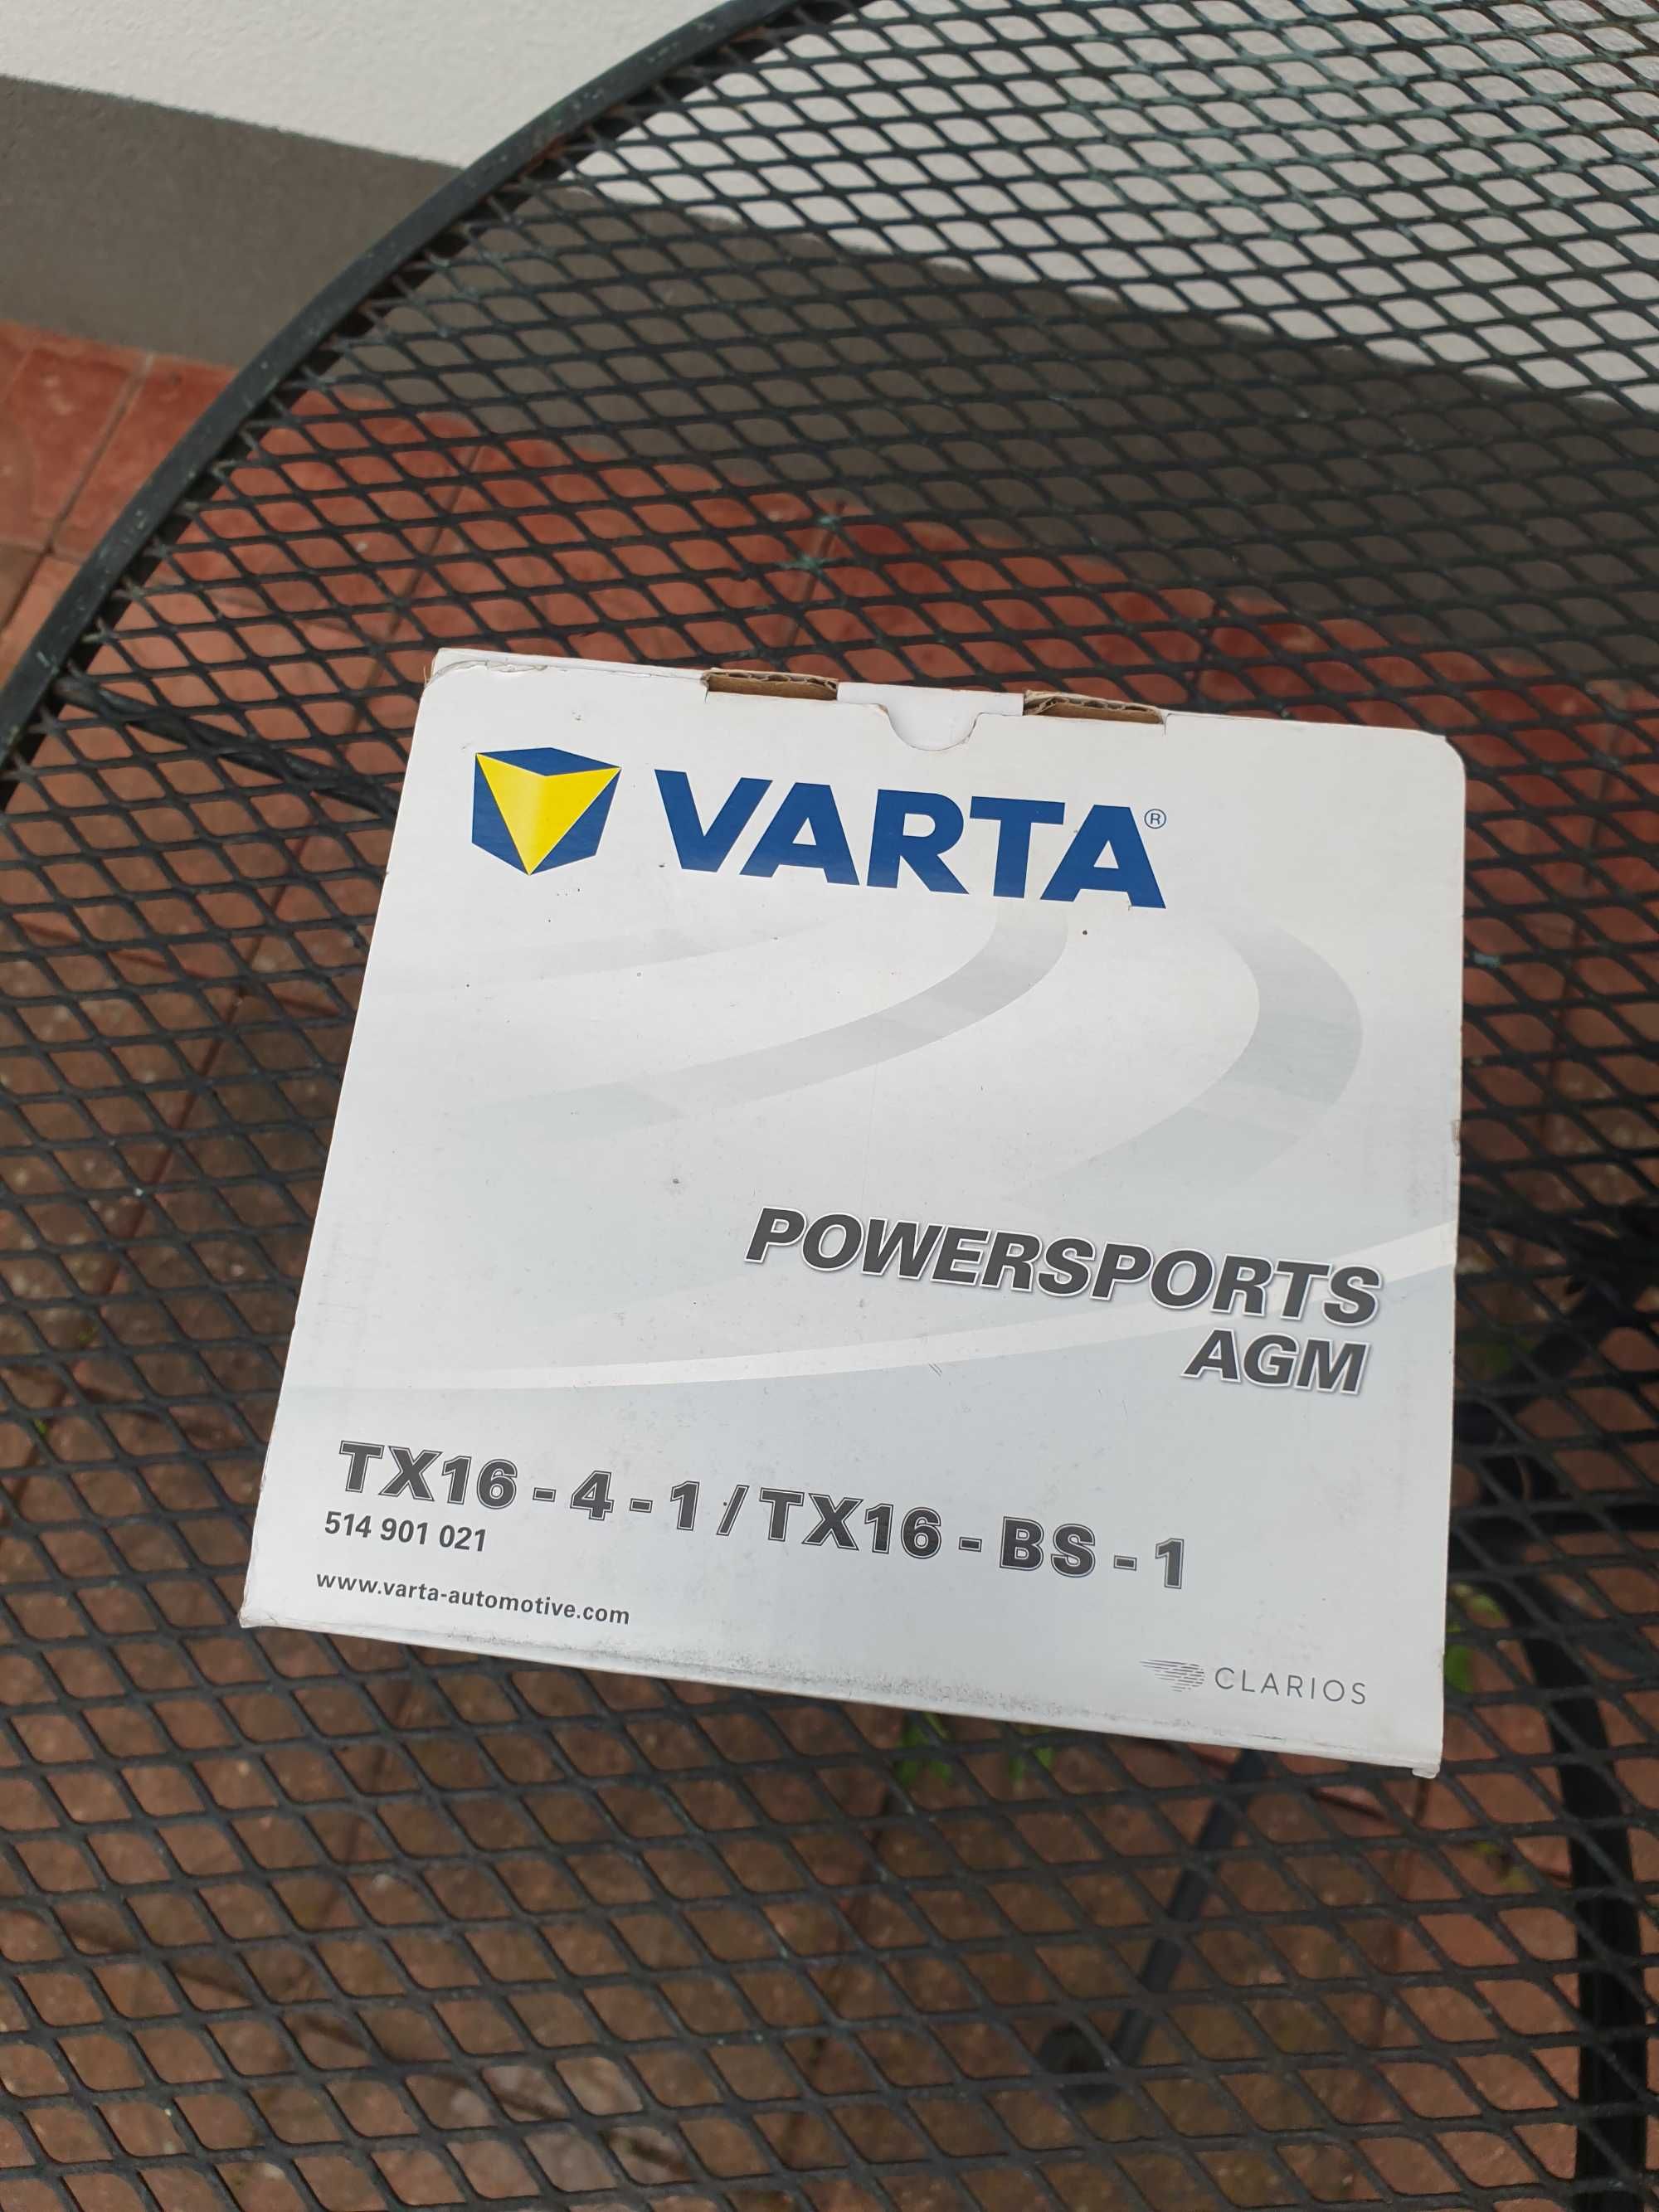 Varta tx16 - 4 - 1/TX16 - BS - 1